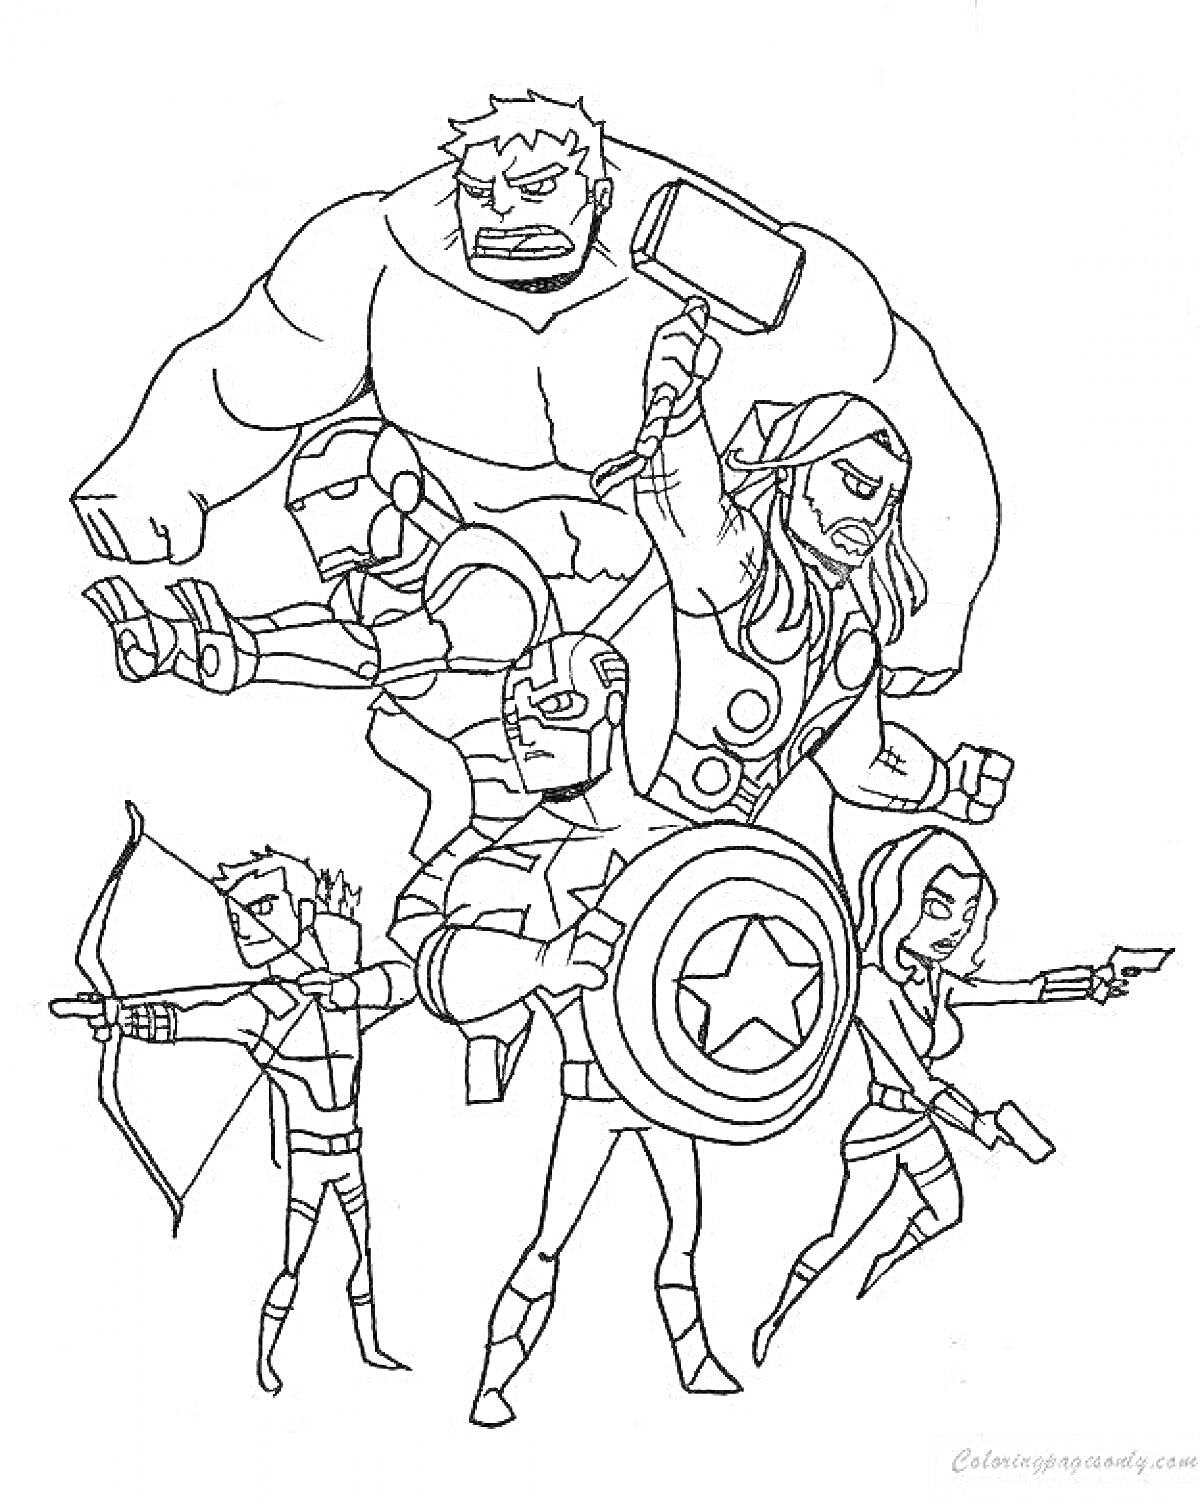 Супергерои Мстители: зеленый персонаж, человек в костюме с шлемом, человек с молотом, персонаж с щитом, лучник, персонаж с пистолетом